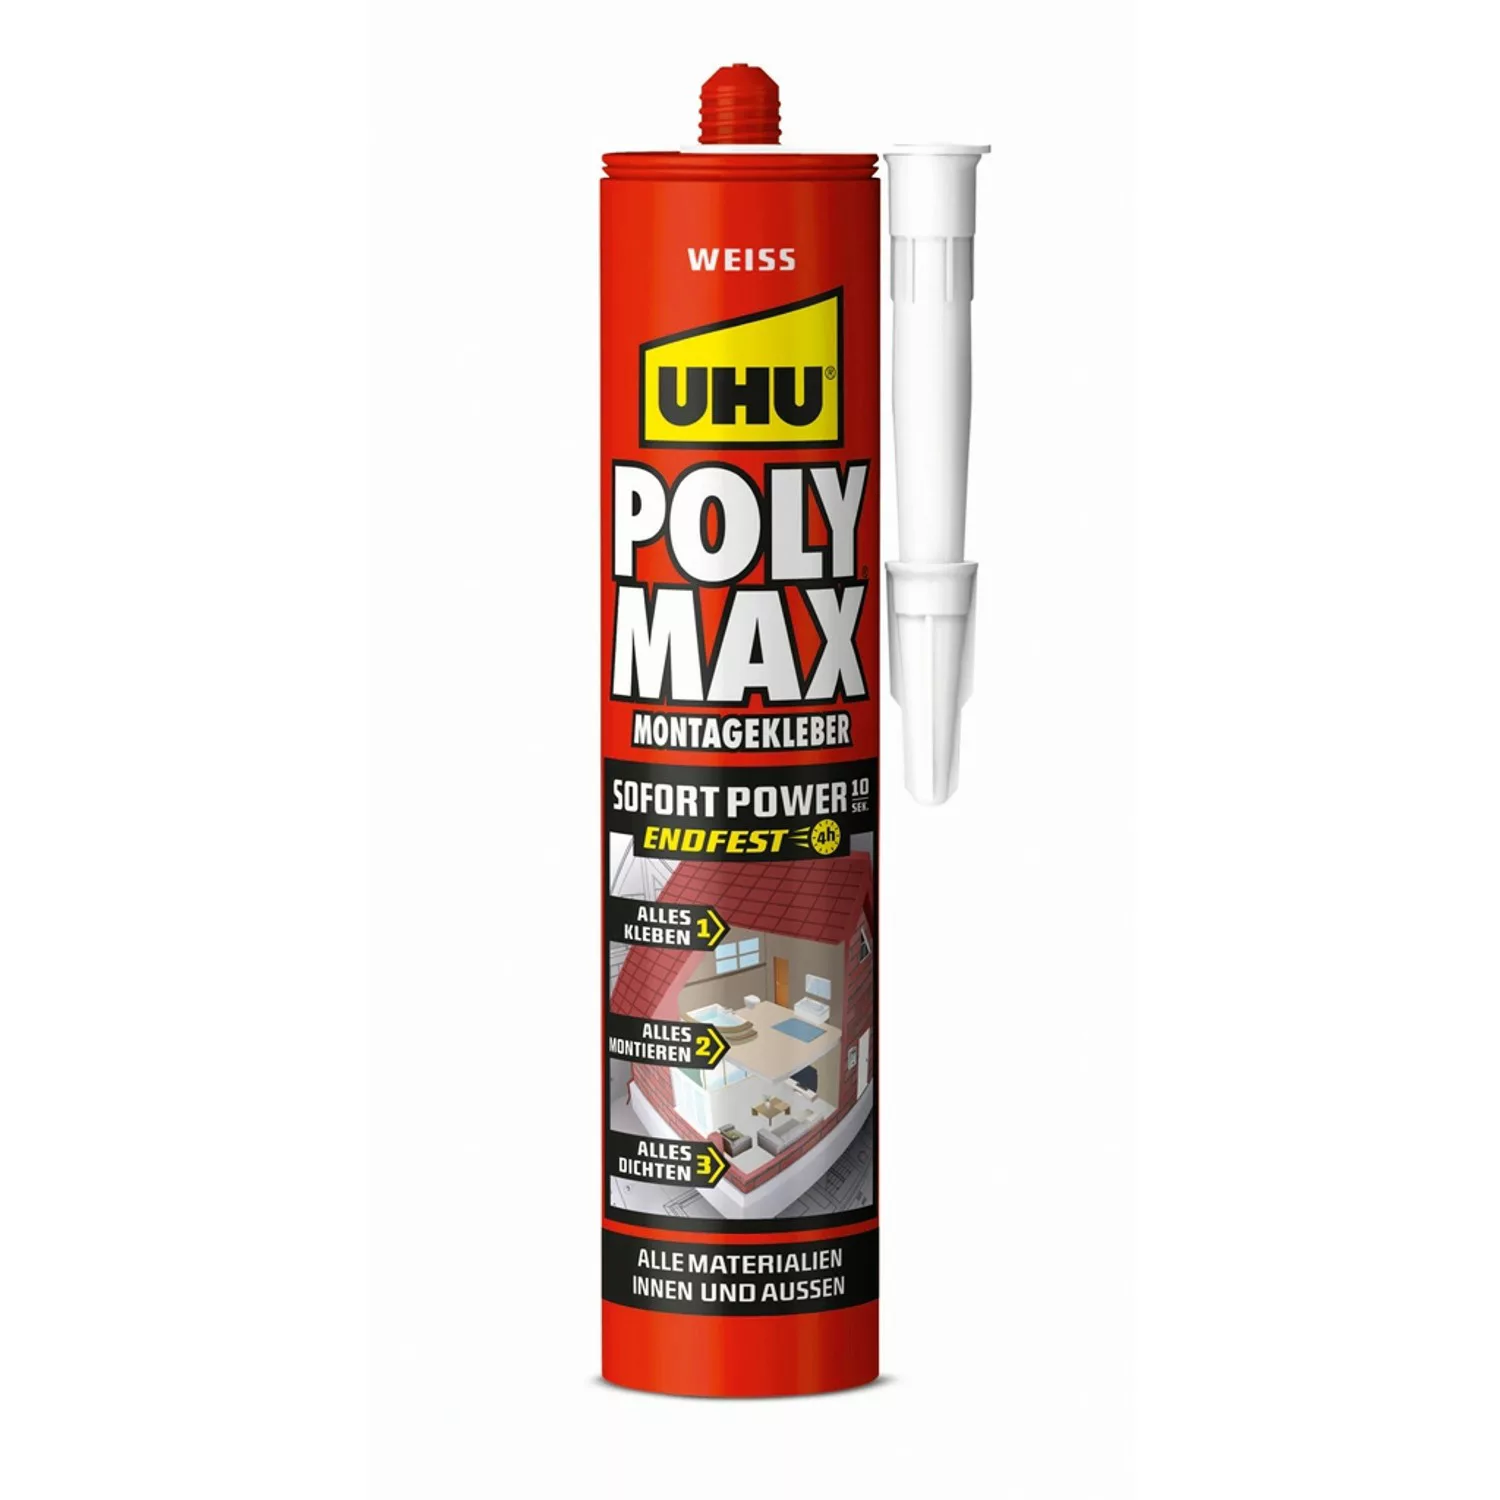 UHU Poly Max Montagekleber Sofort Power Weiß 425 g günstig online kaufen